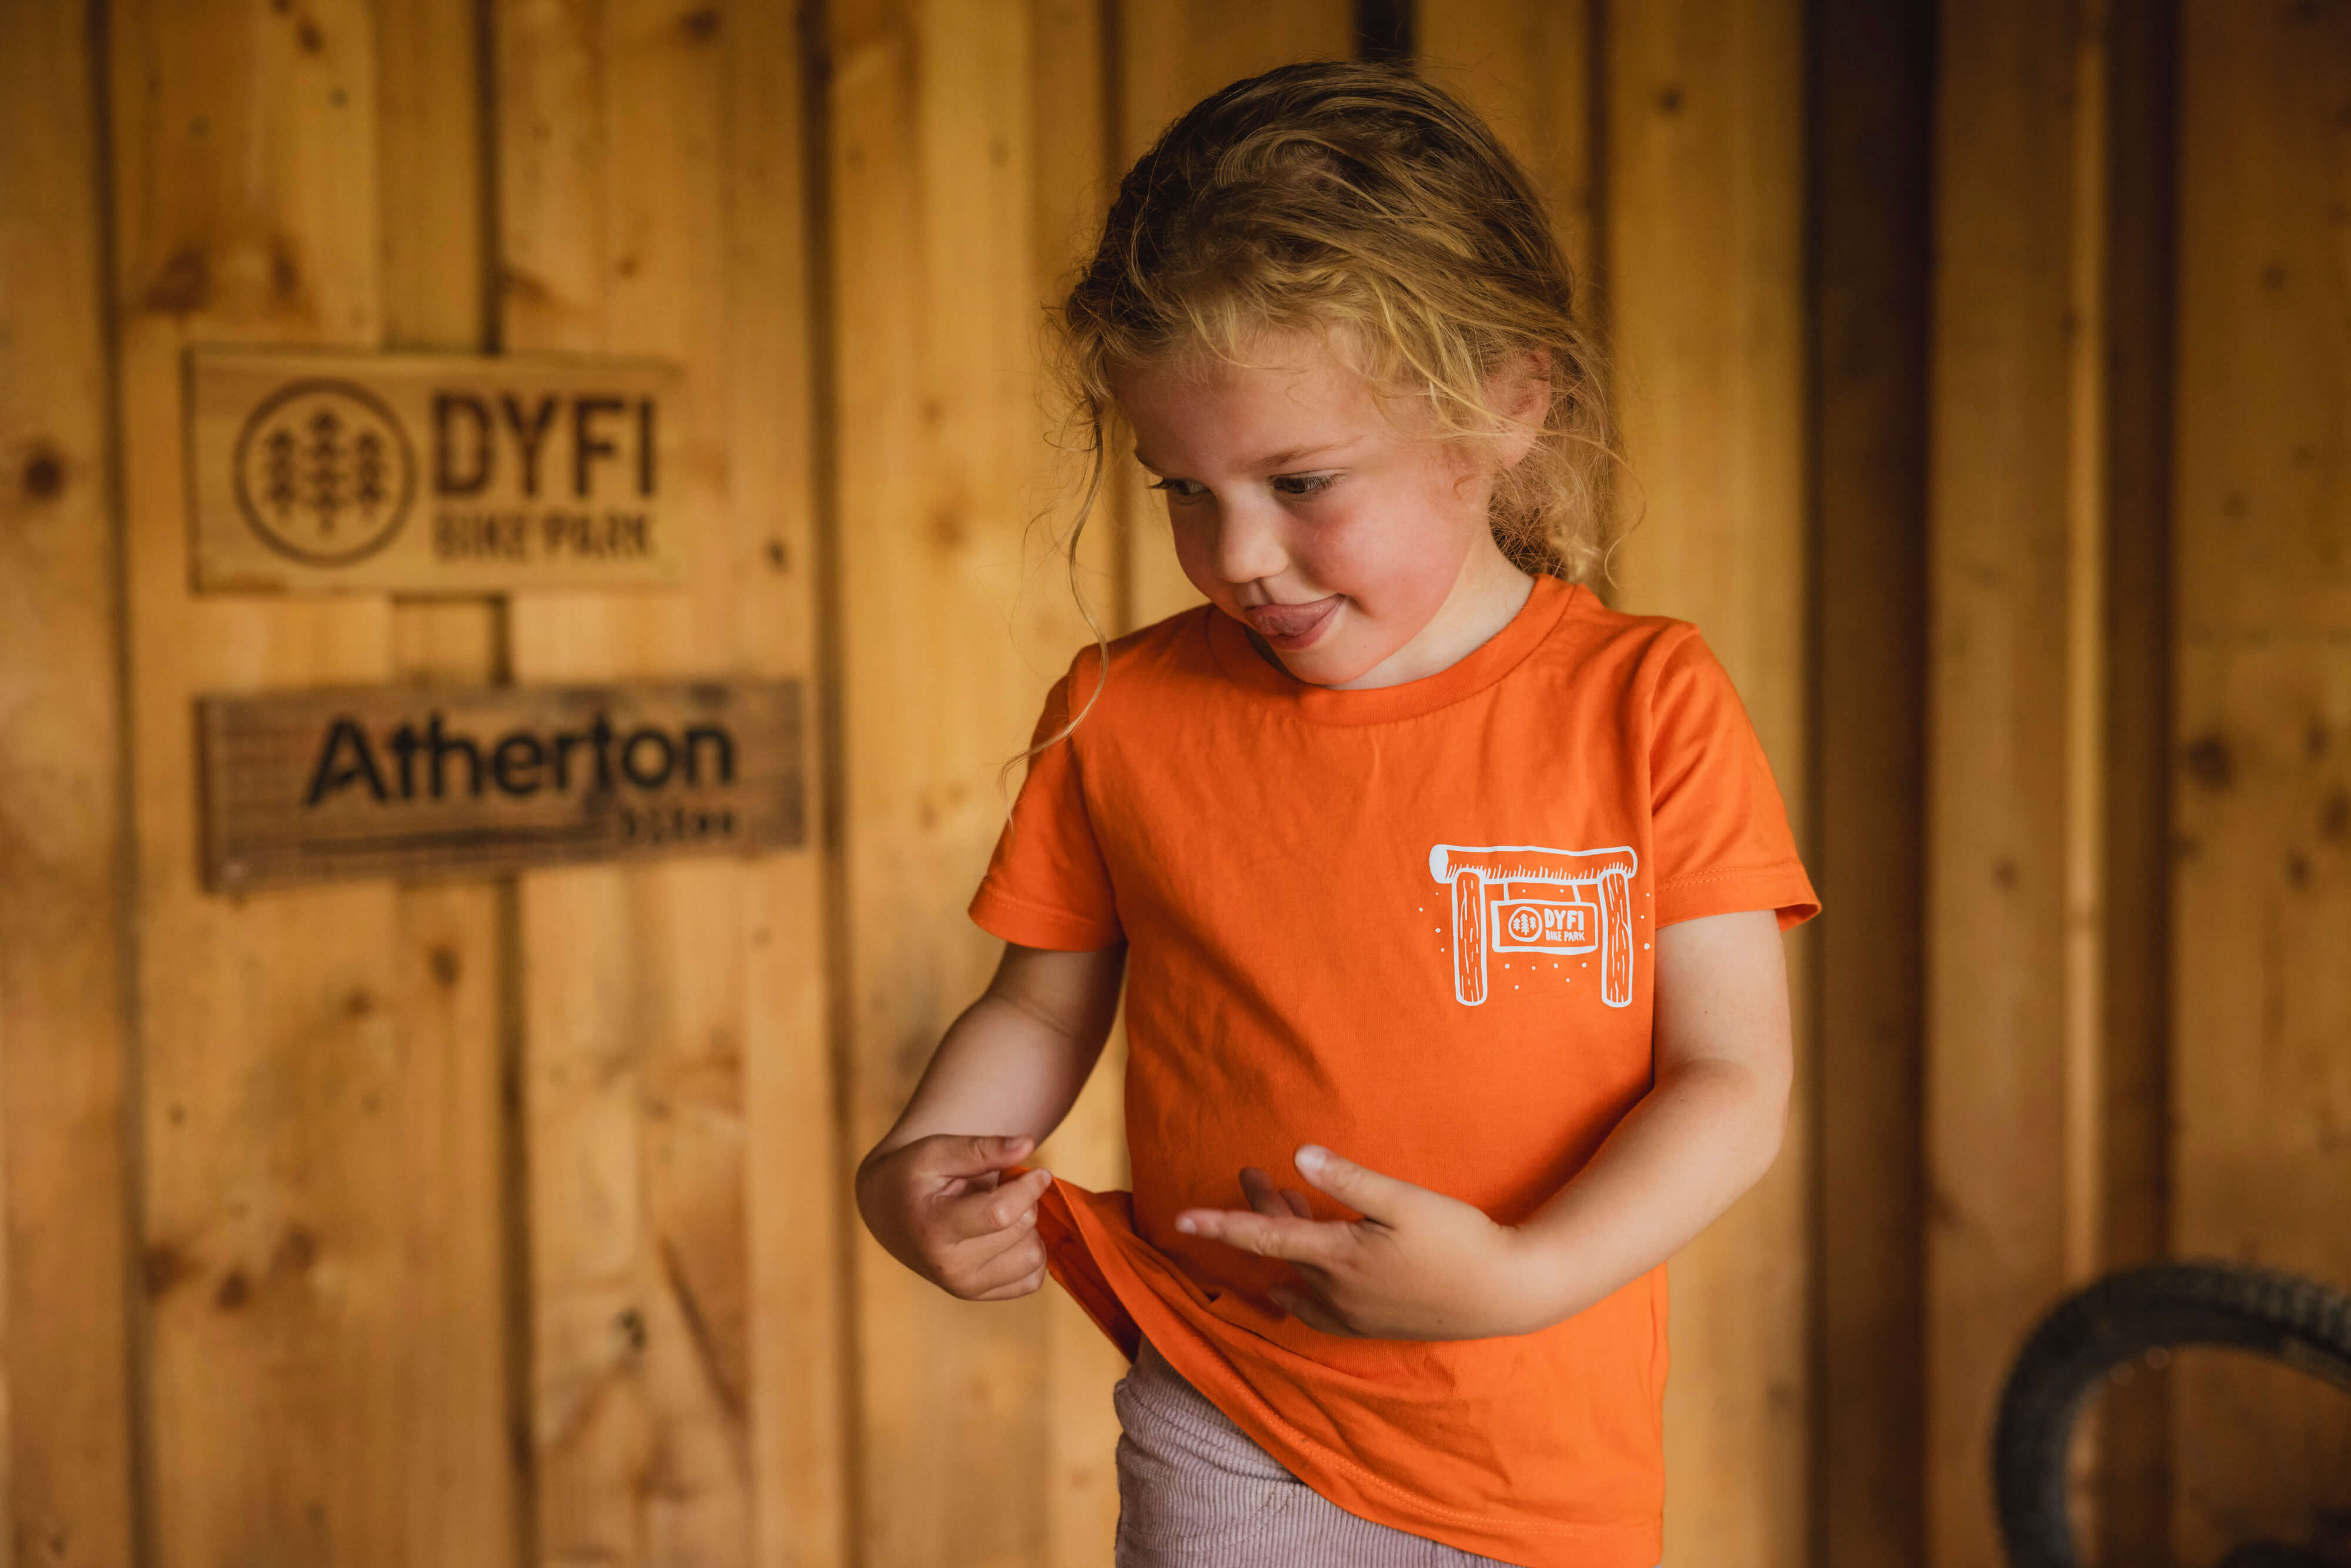 Kids Orange T shirt - Dyfi Bike Park